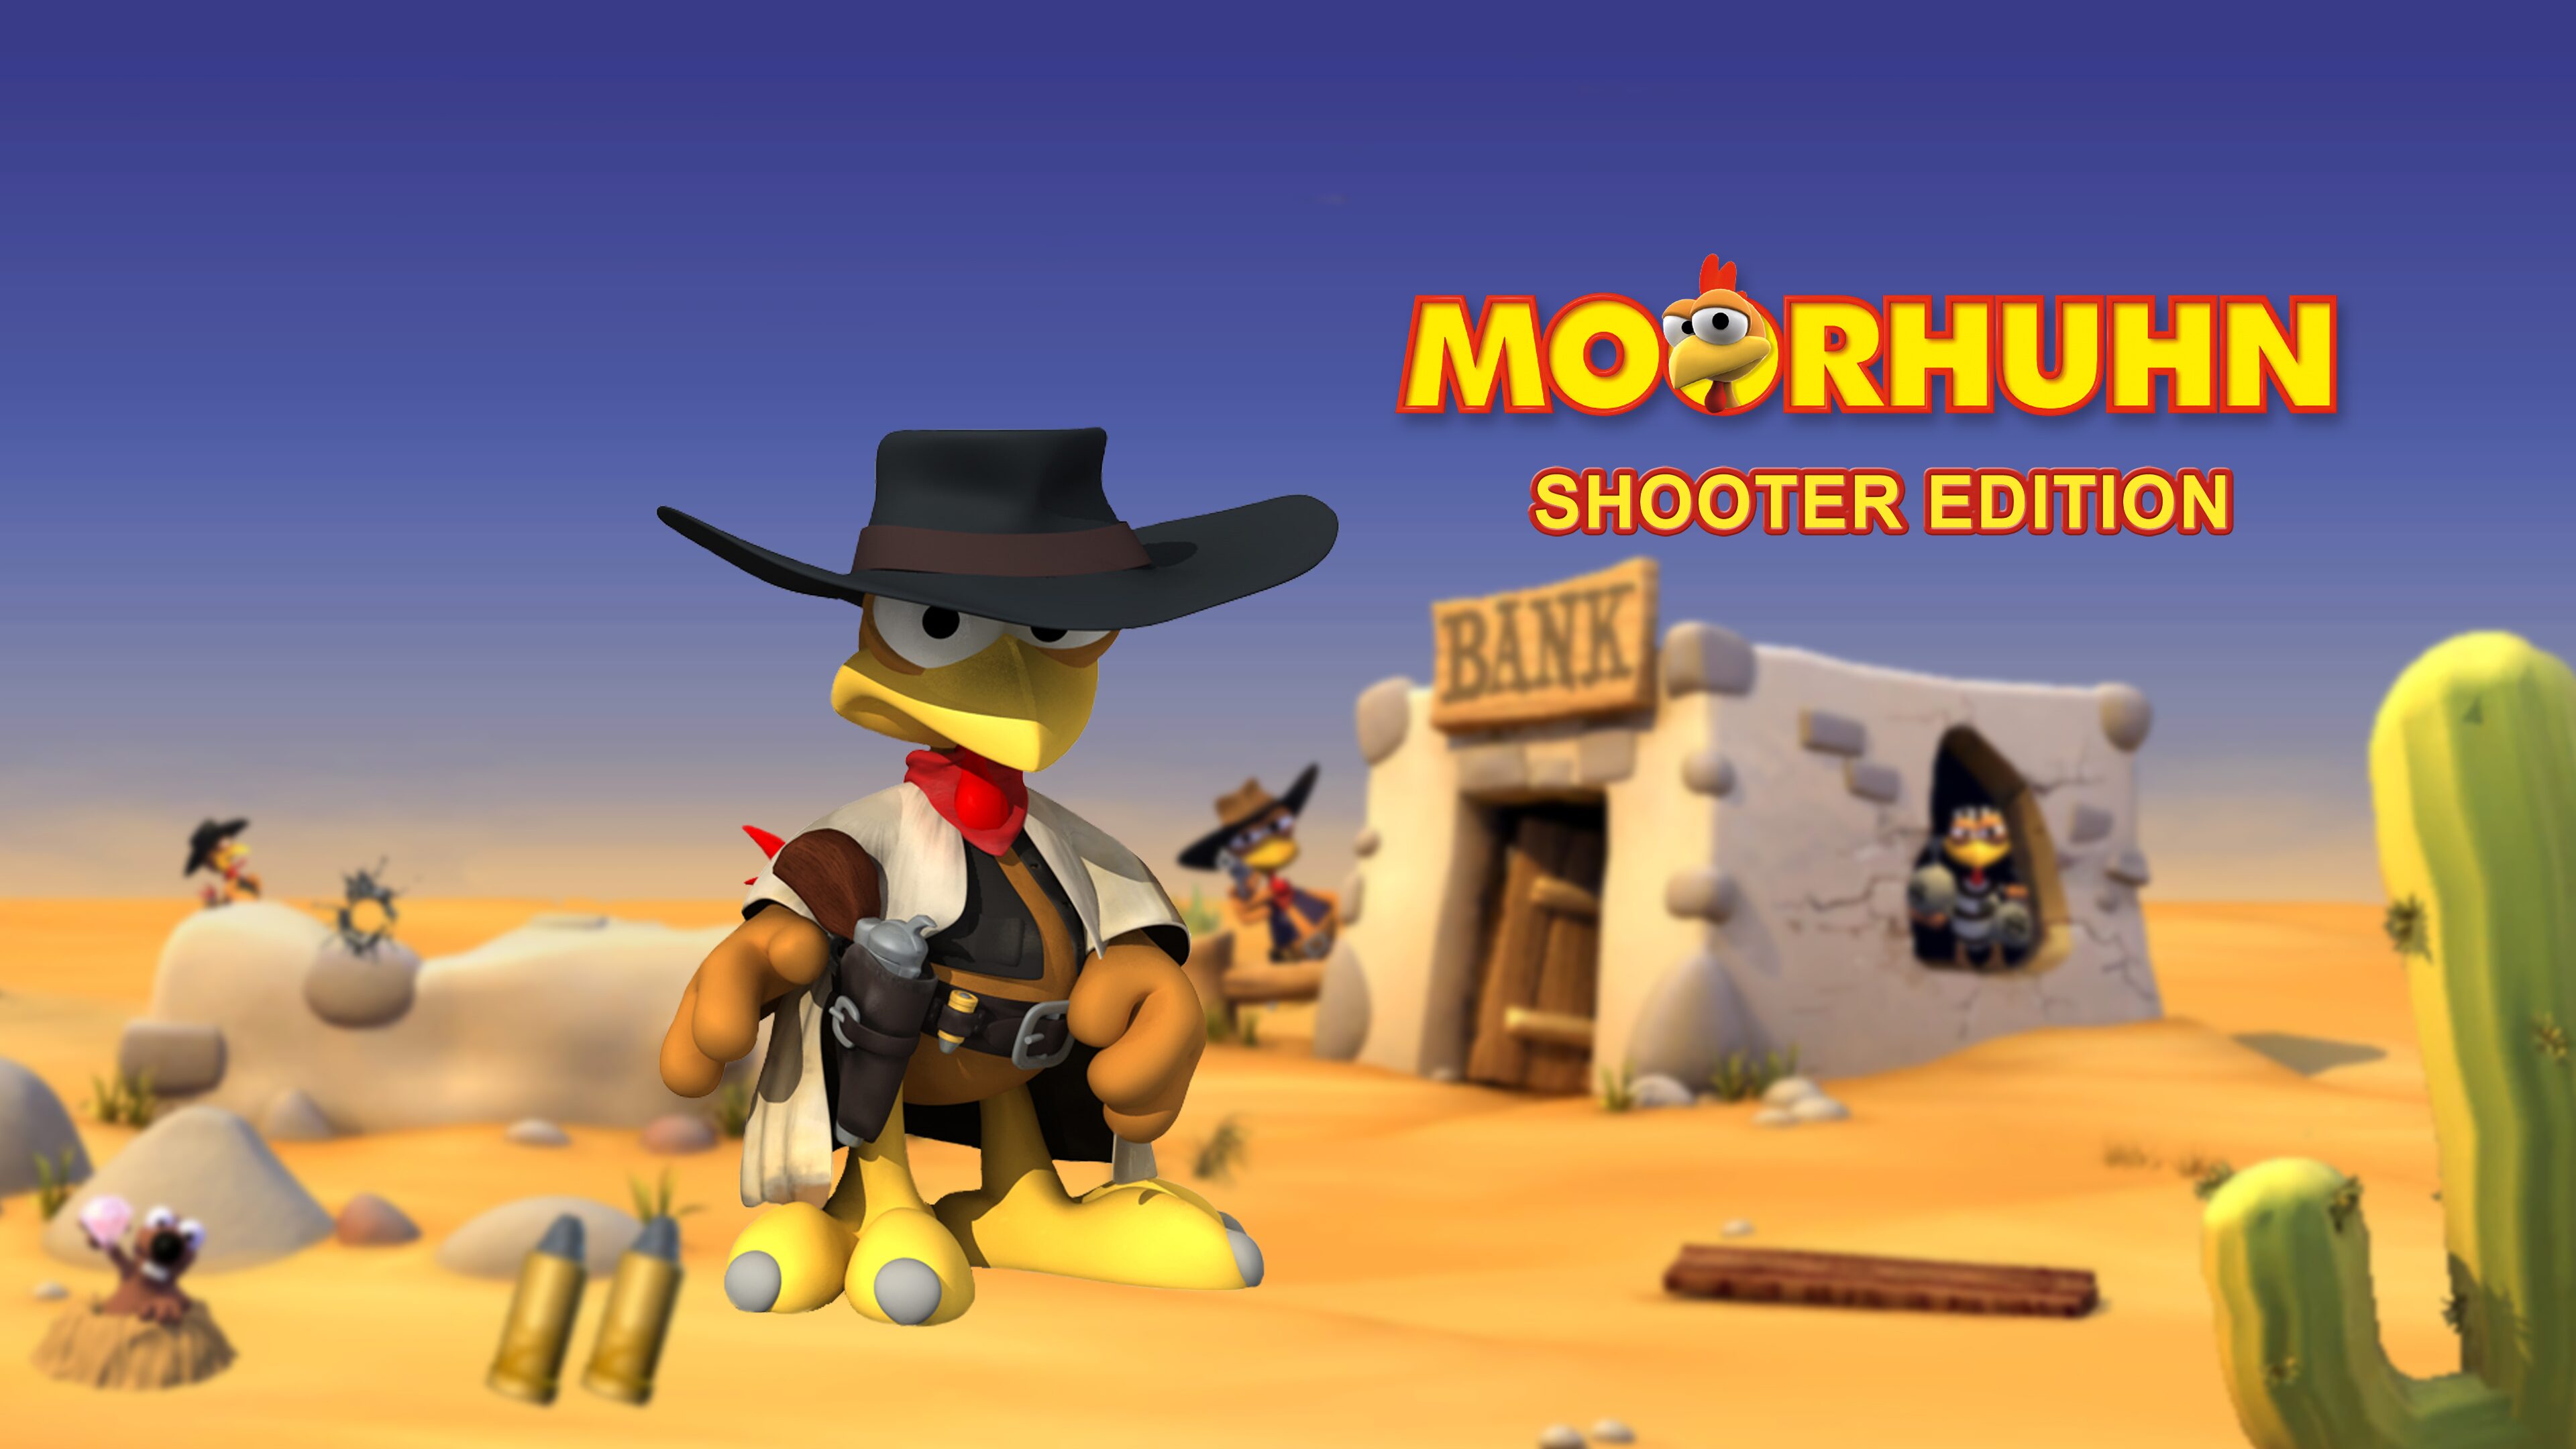 Moorhuhn Shooter Edition